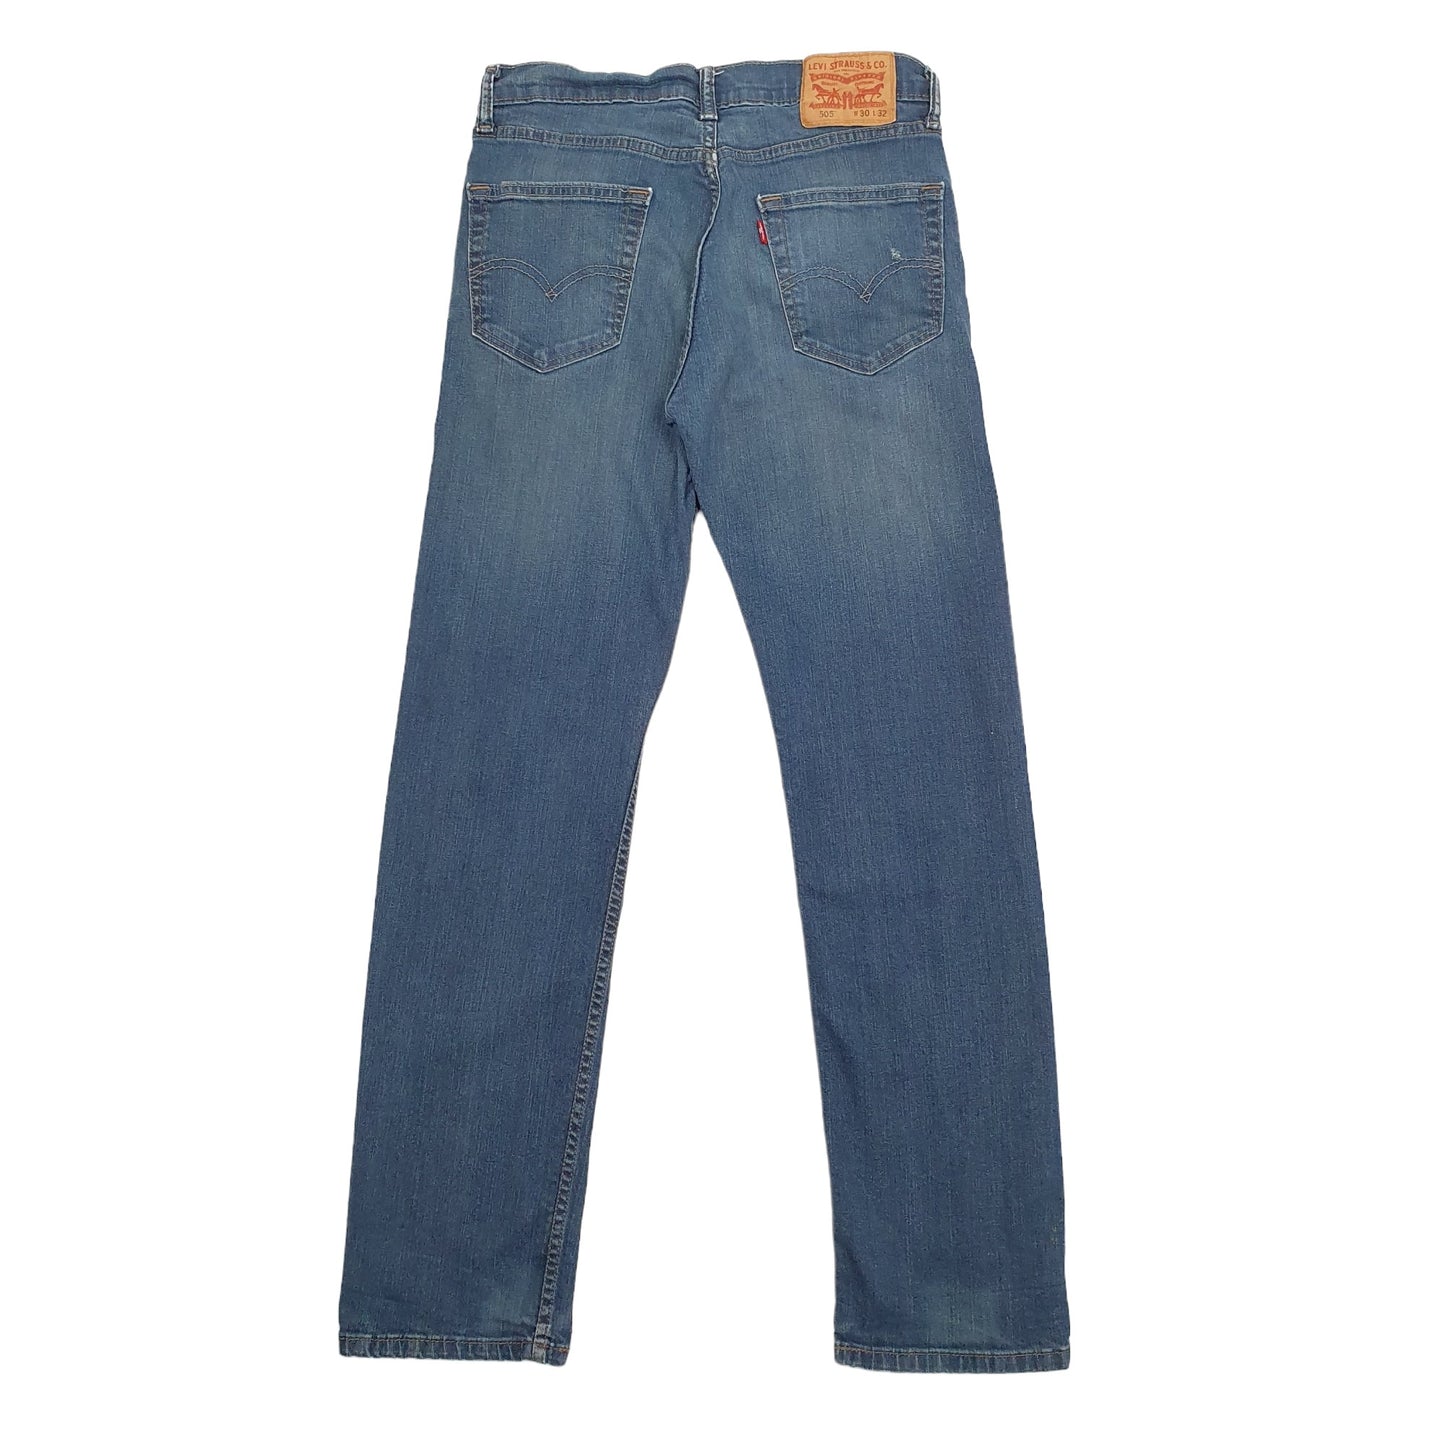 Levis 505 Regular Fit Jeans W30 L32 Blue